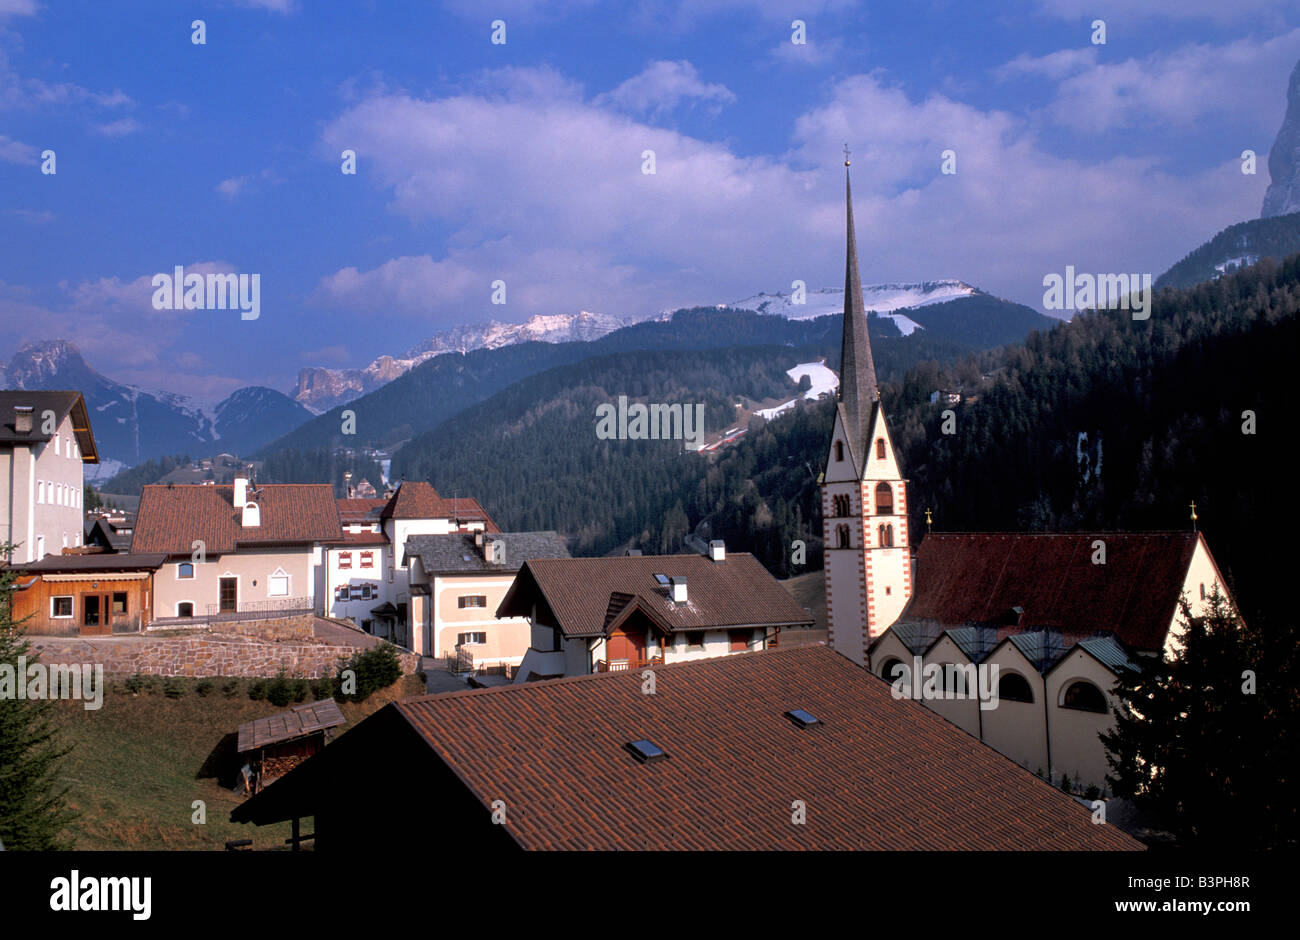 Foreshortening, Santa Cristina, Val Gardena, Trentino Alto Adige, Italy Stock Photo